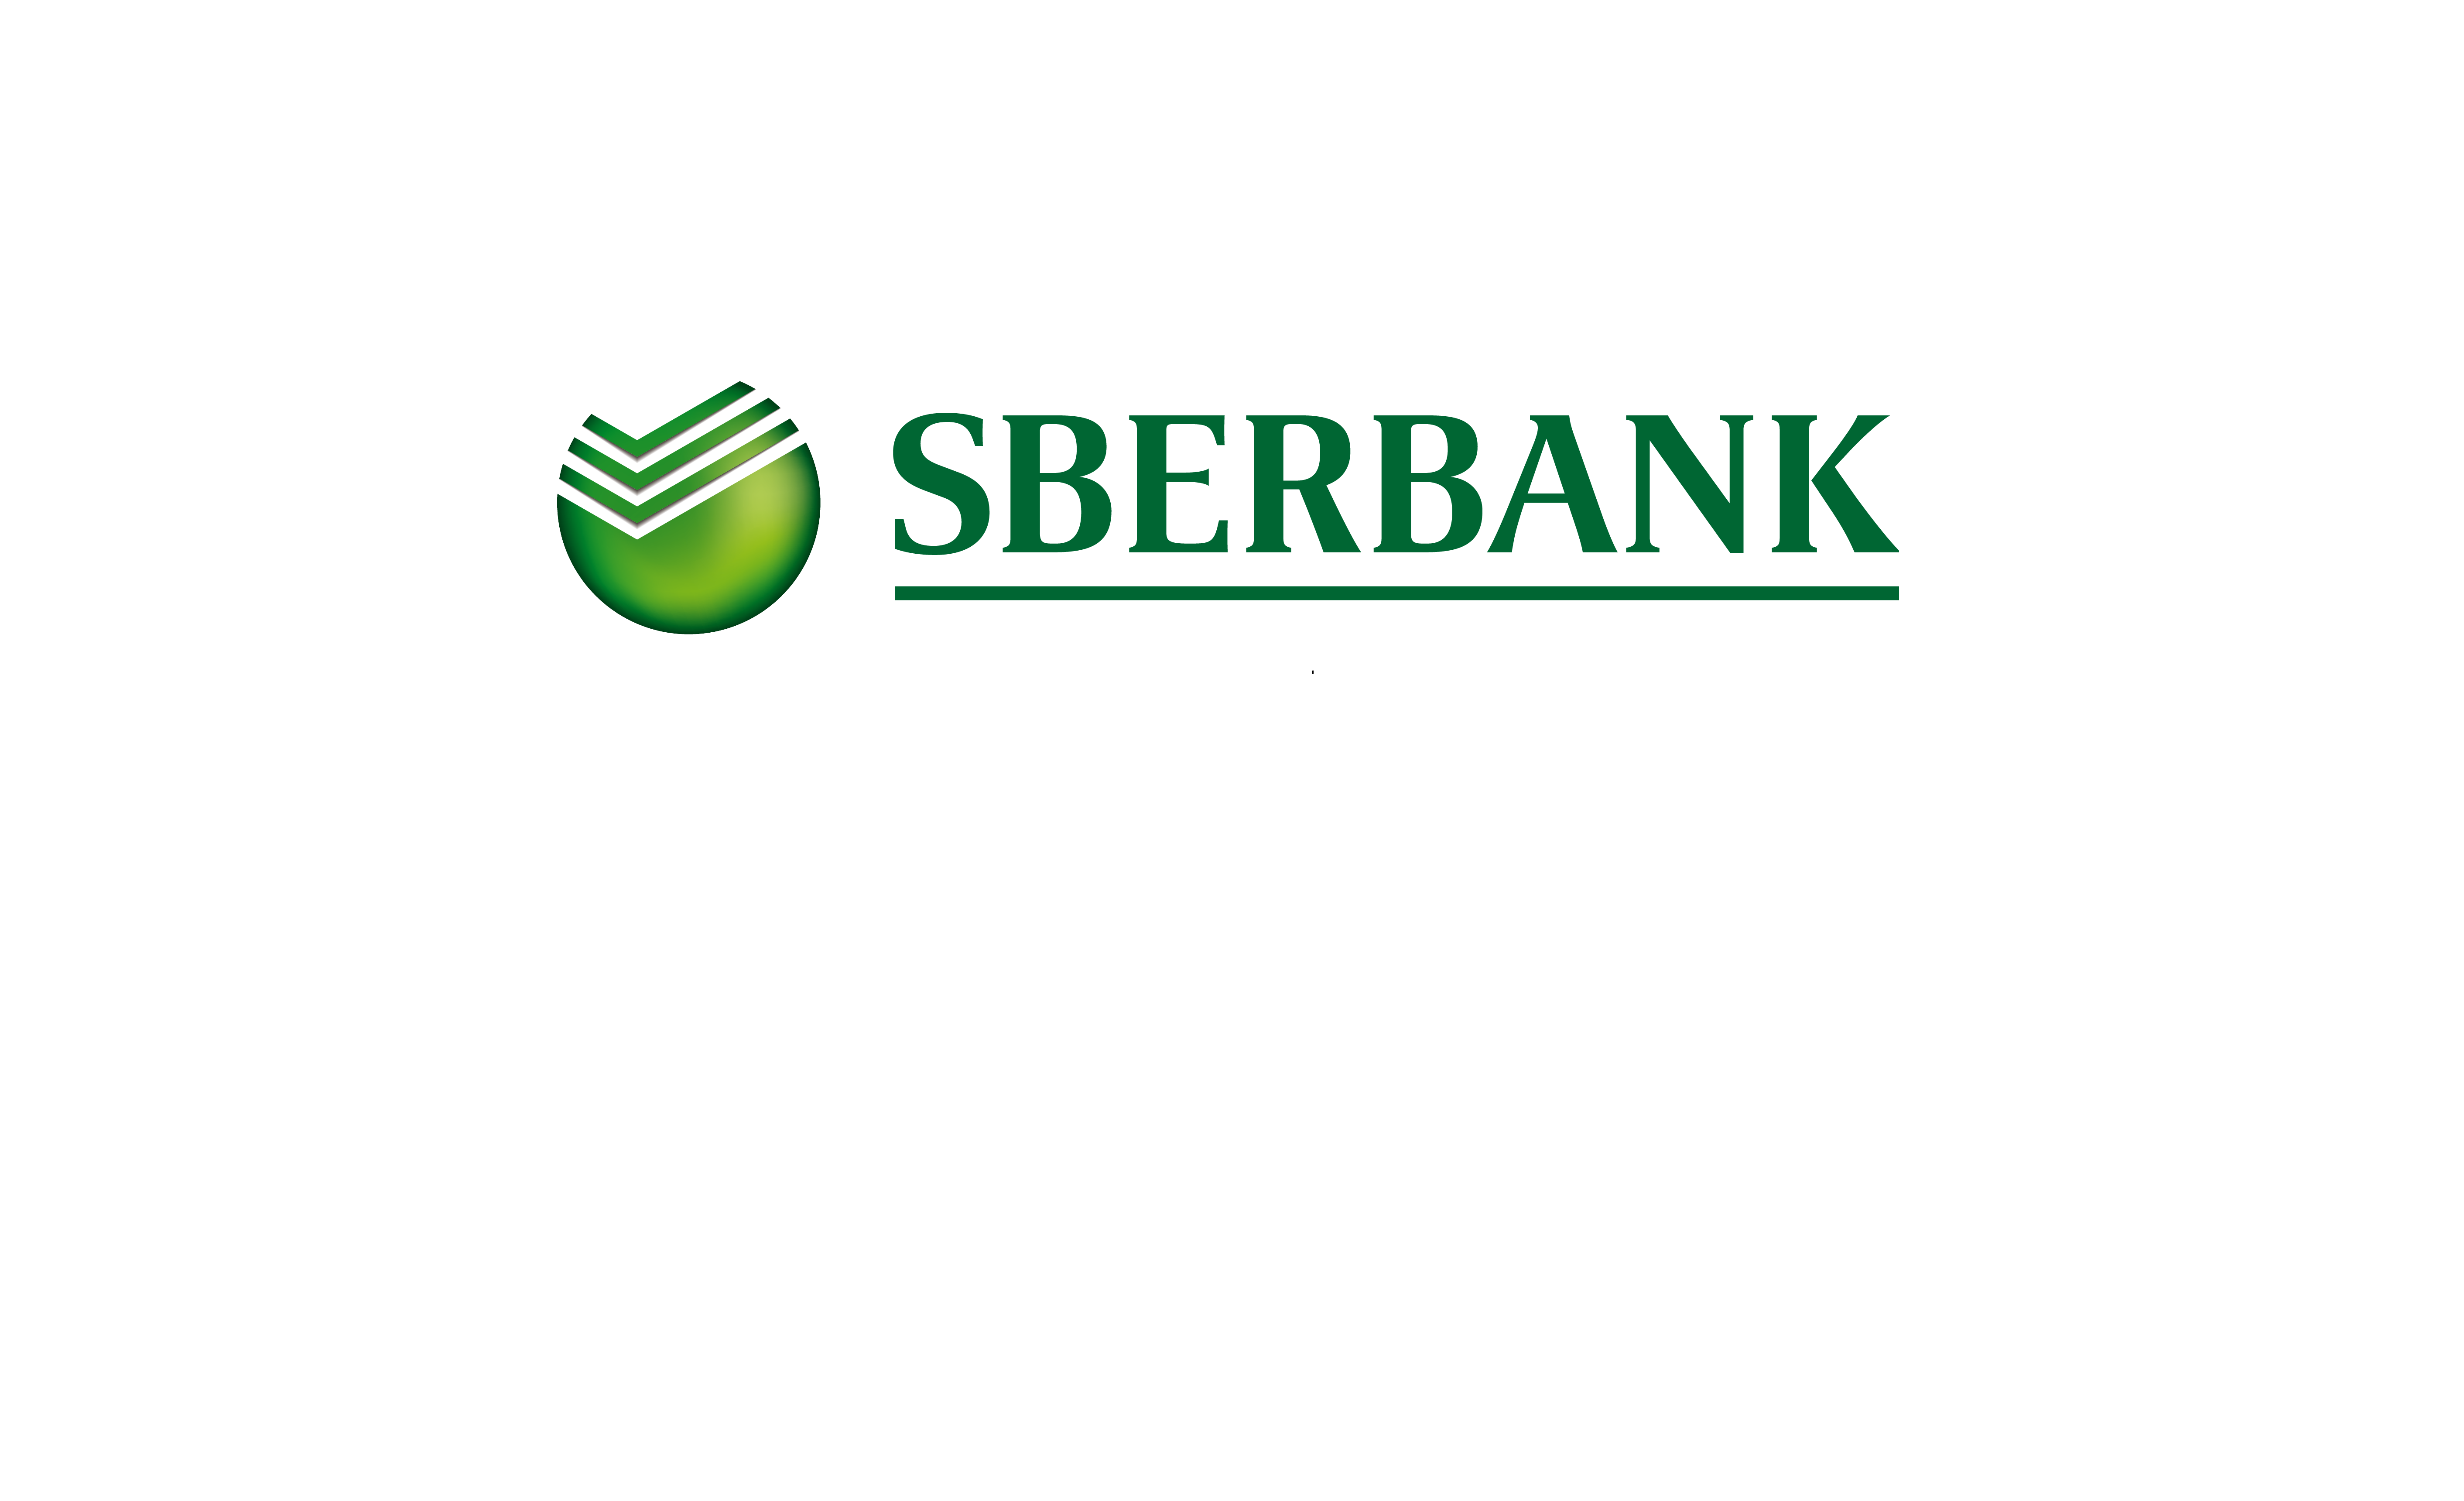 Sberbank me. Сбербанк управление активами лого. Сбертянн. Сбербанк всегда рядом. Надпись Сбербанк.